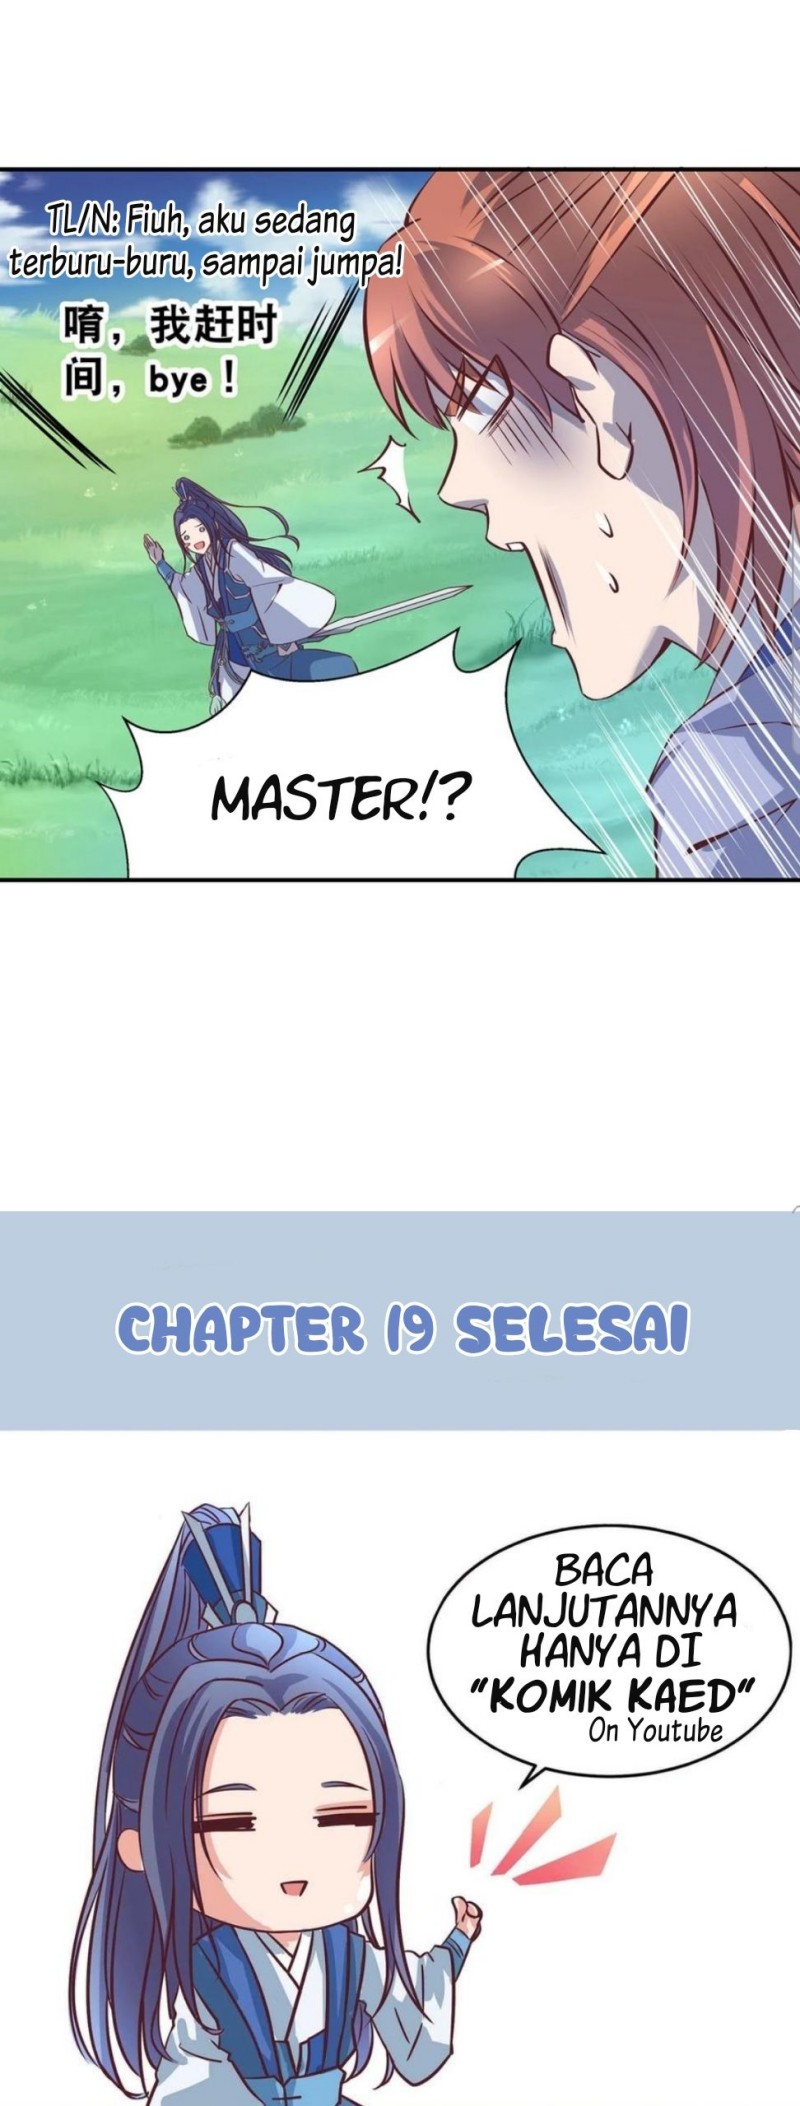 First Master (Nebula) Chapter 19